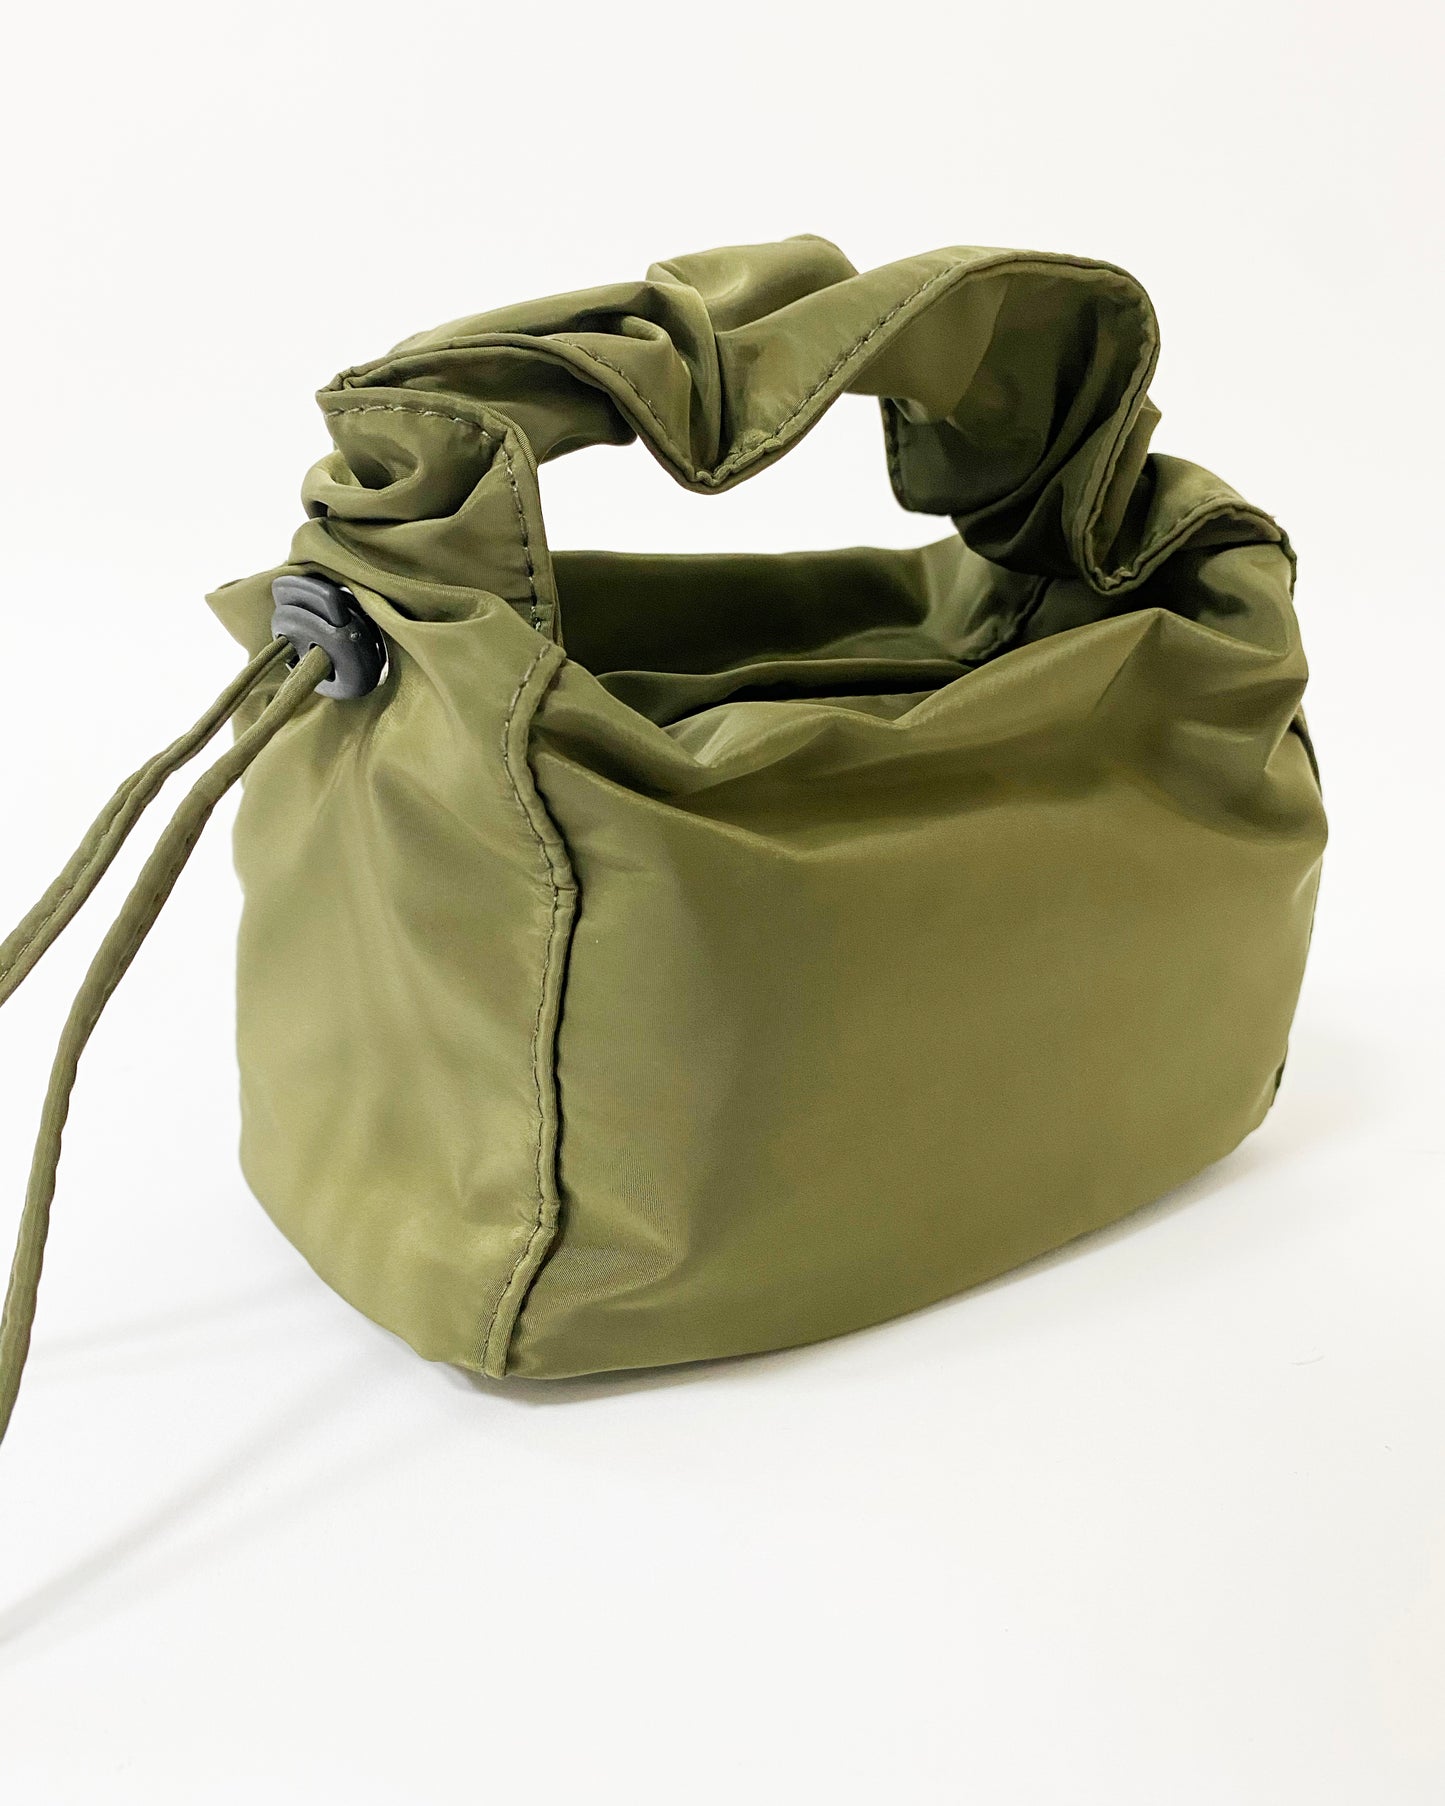 olive nylon ruched handle bag *pre-order*